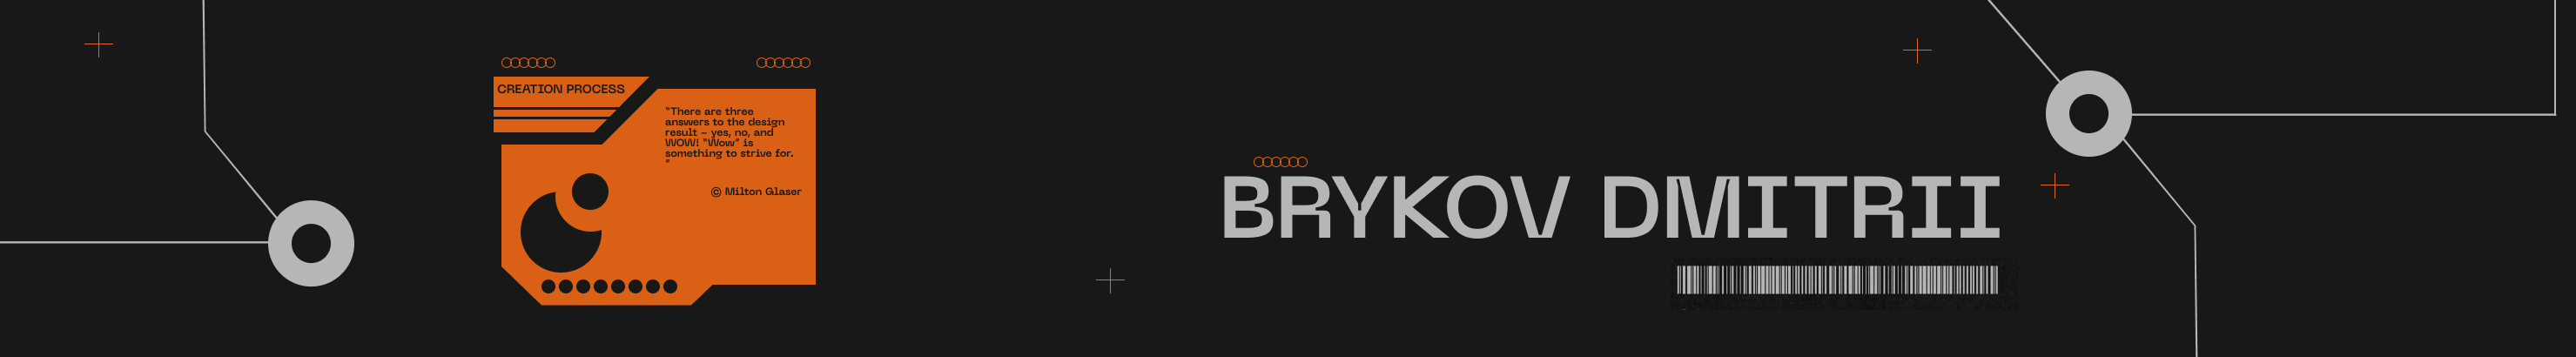 Дмитрий Брыков's profile banner